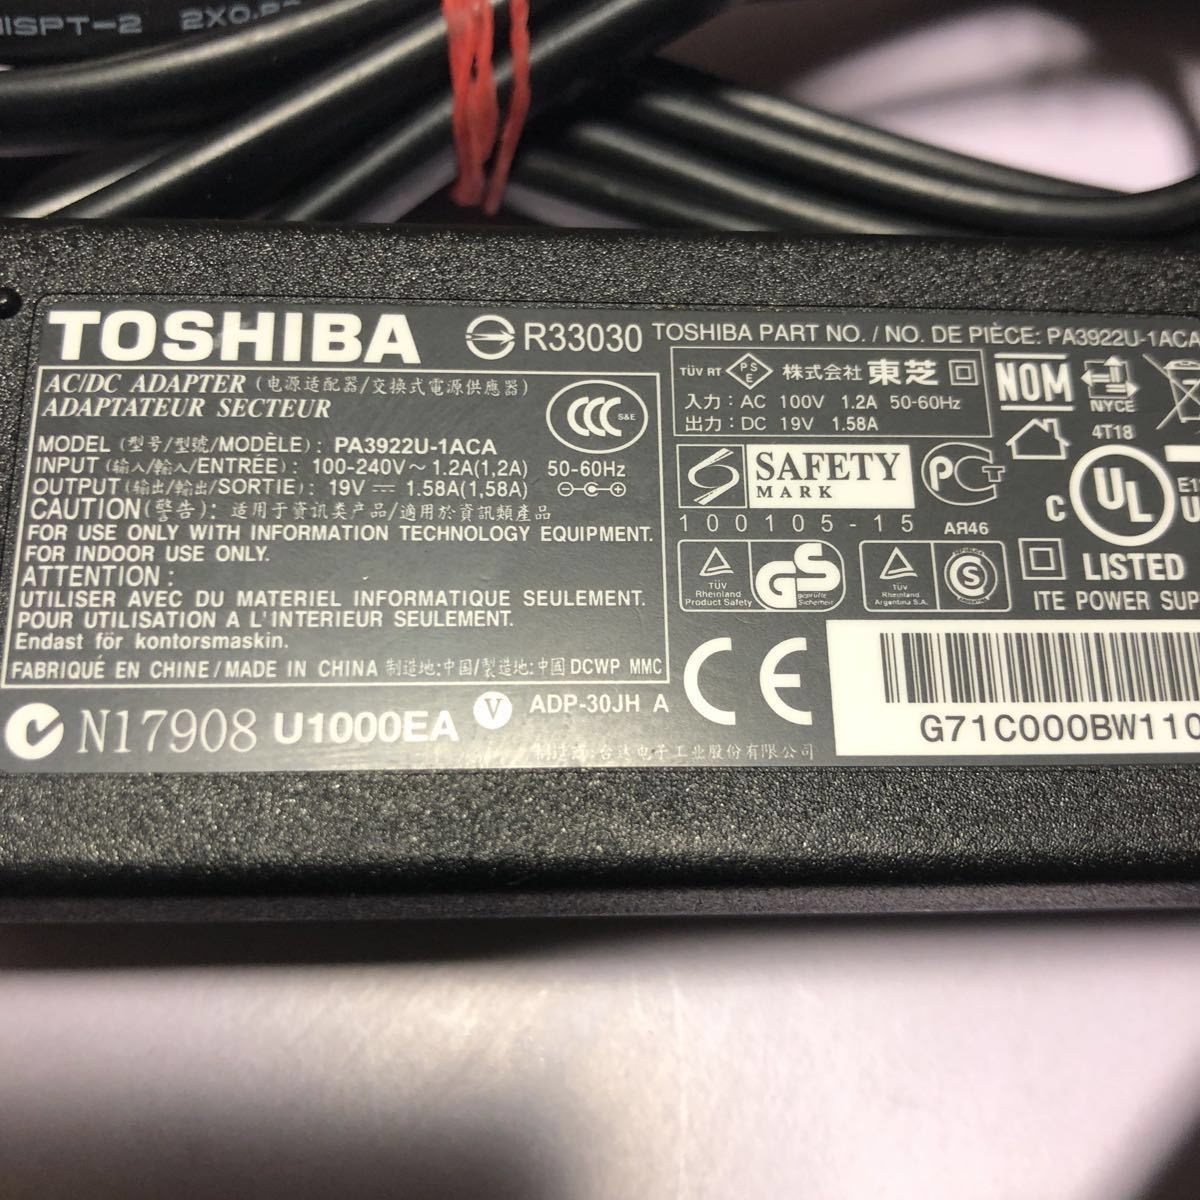 TOSHIBA Toshiba REGZA Tablet AT300 WT310 WT301 для AC адаптер PA3922U-1ACA 19V~1.58A гарантия работы наружный диаметр примерно 4mm, внутренний диаметр примерно 1.5mm б/у рабочий товар управление SHA129